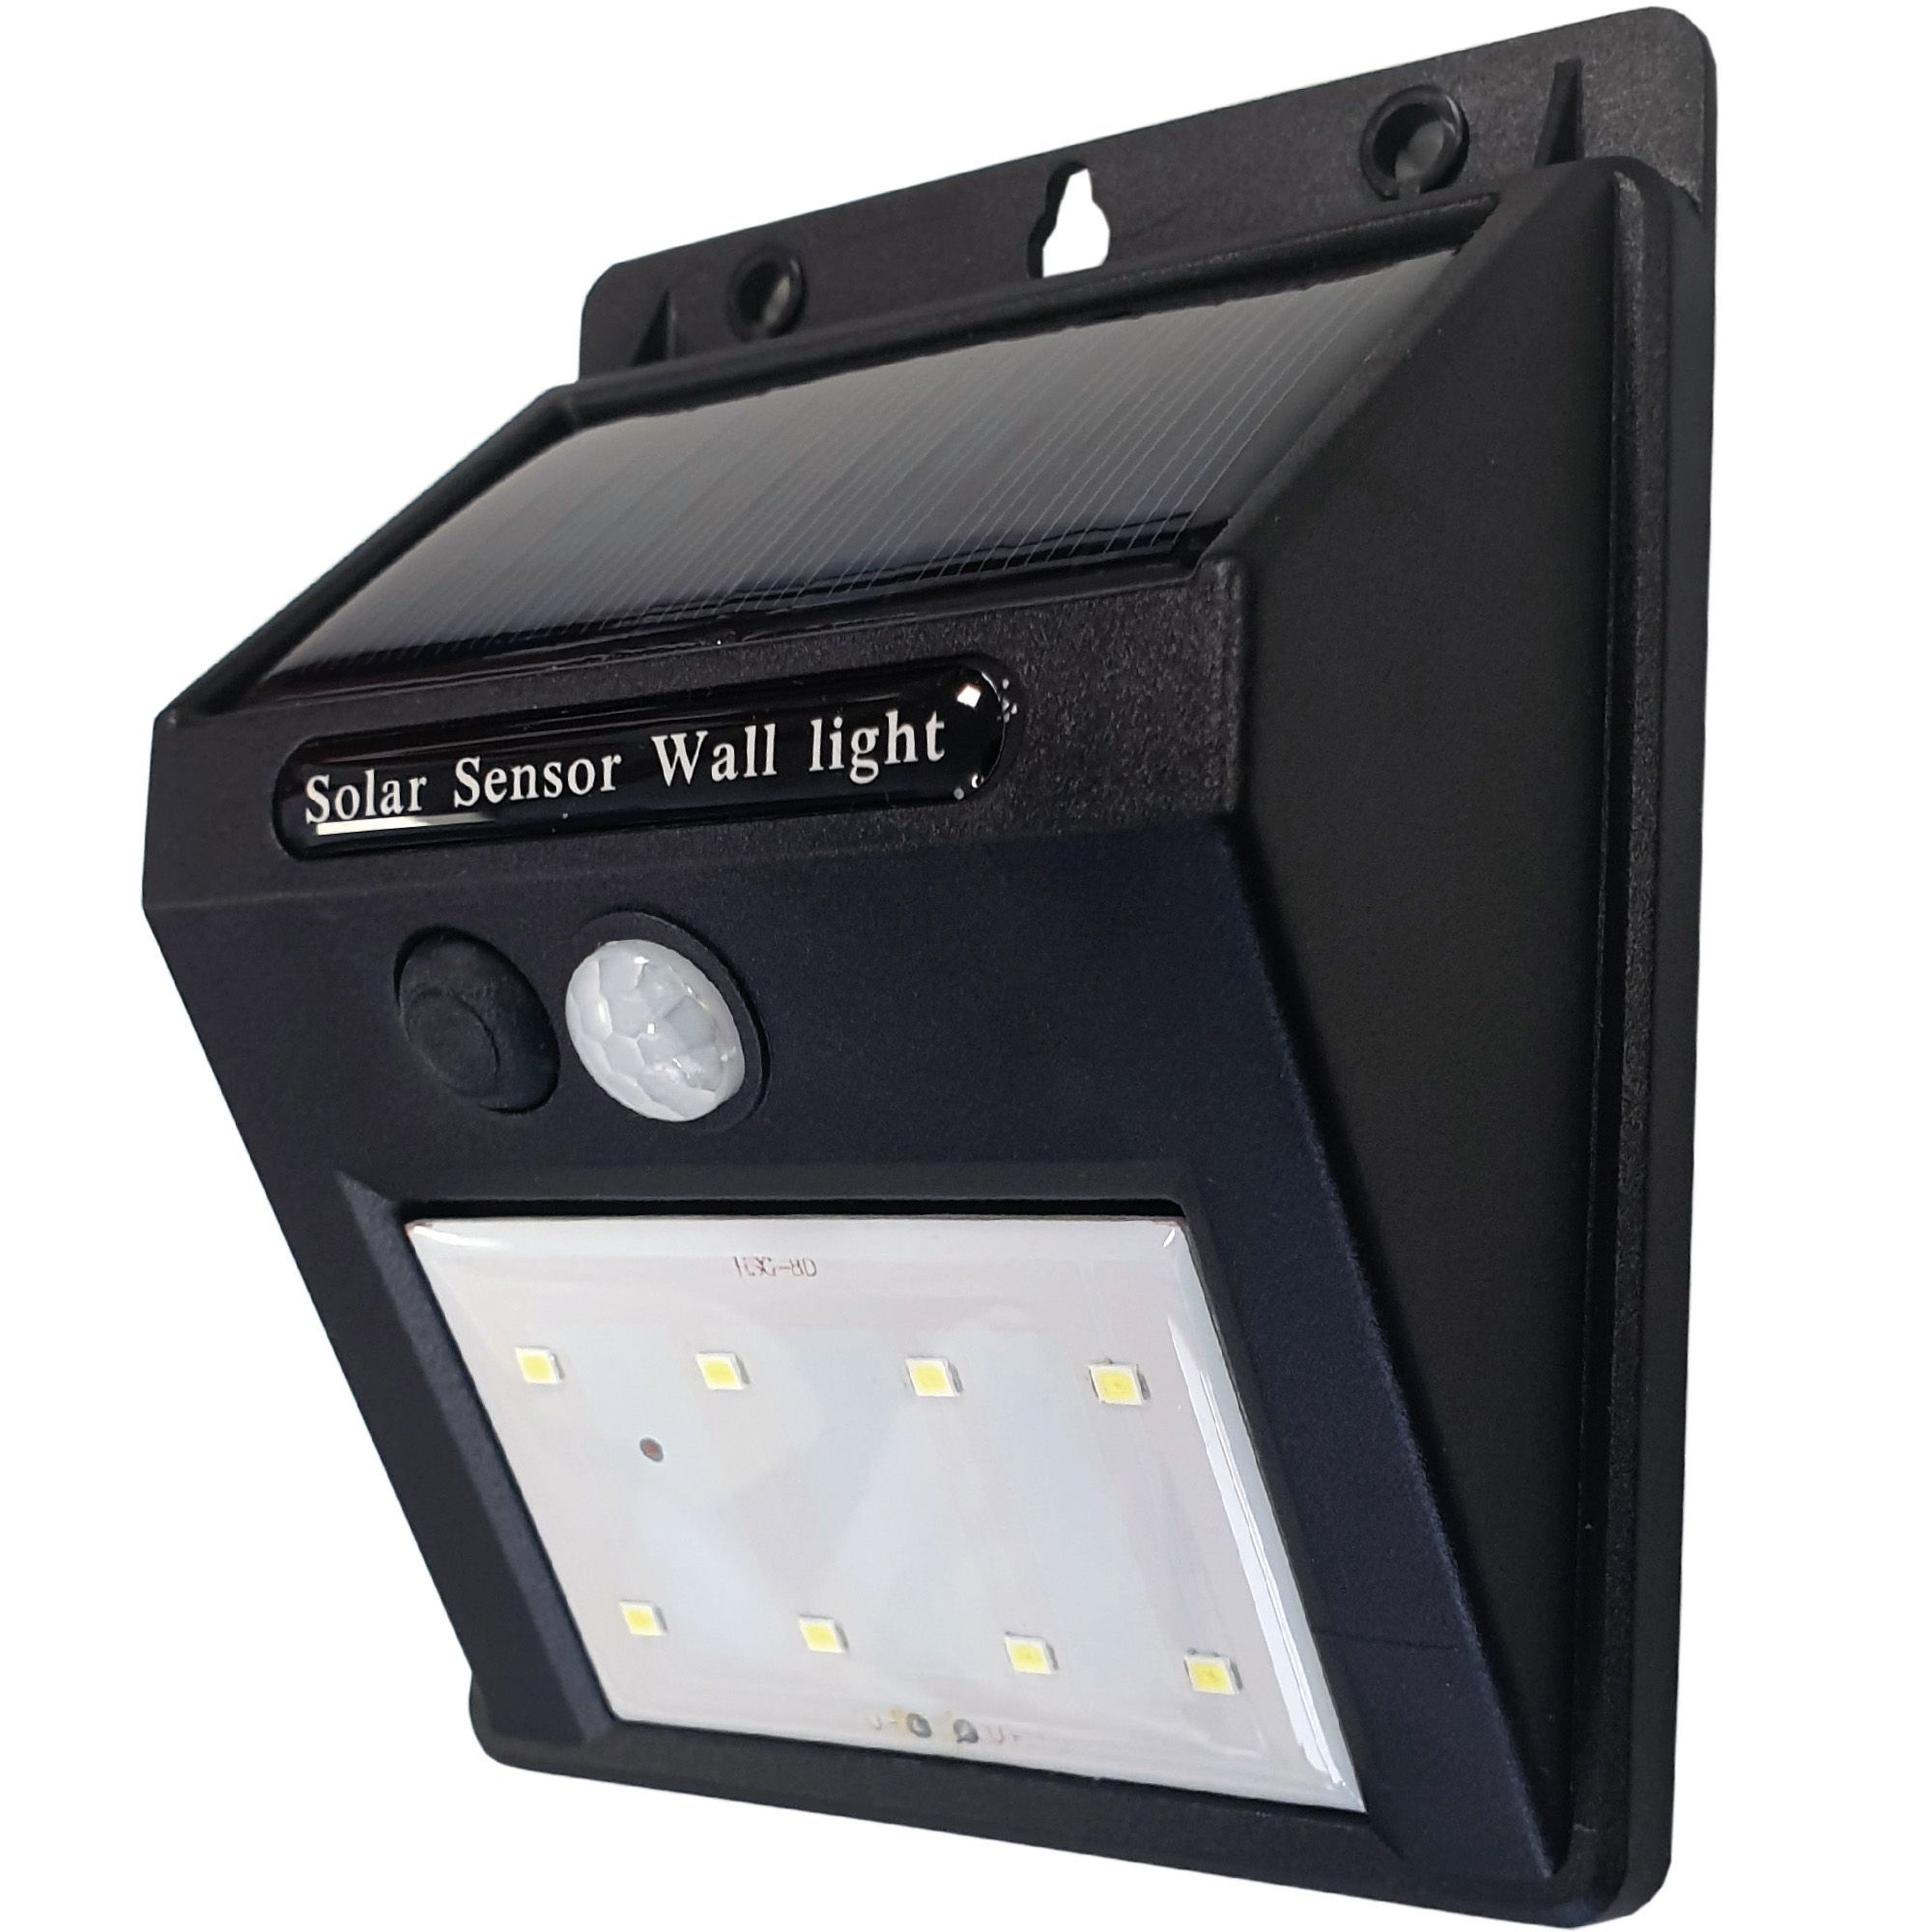 BESTLIVINGS BM-04579 Solar Wandlampe LED Weiß Bewegungsmelder